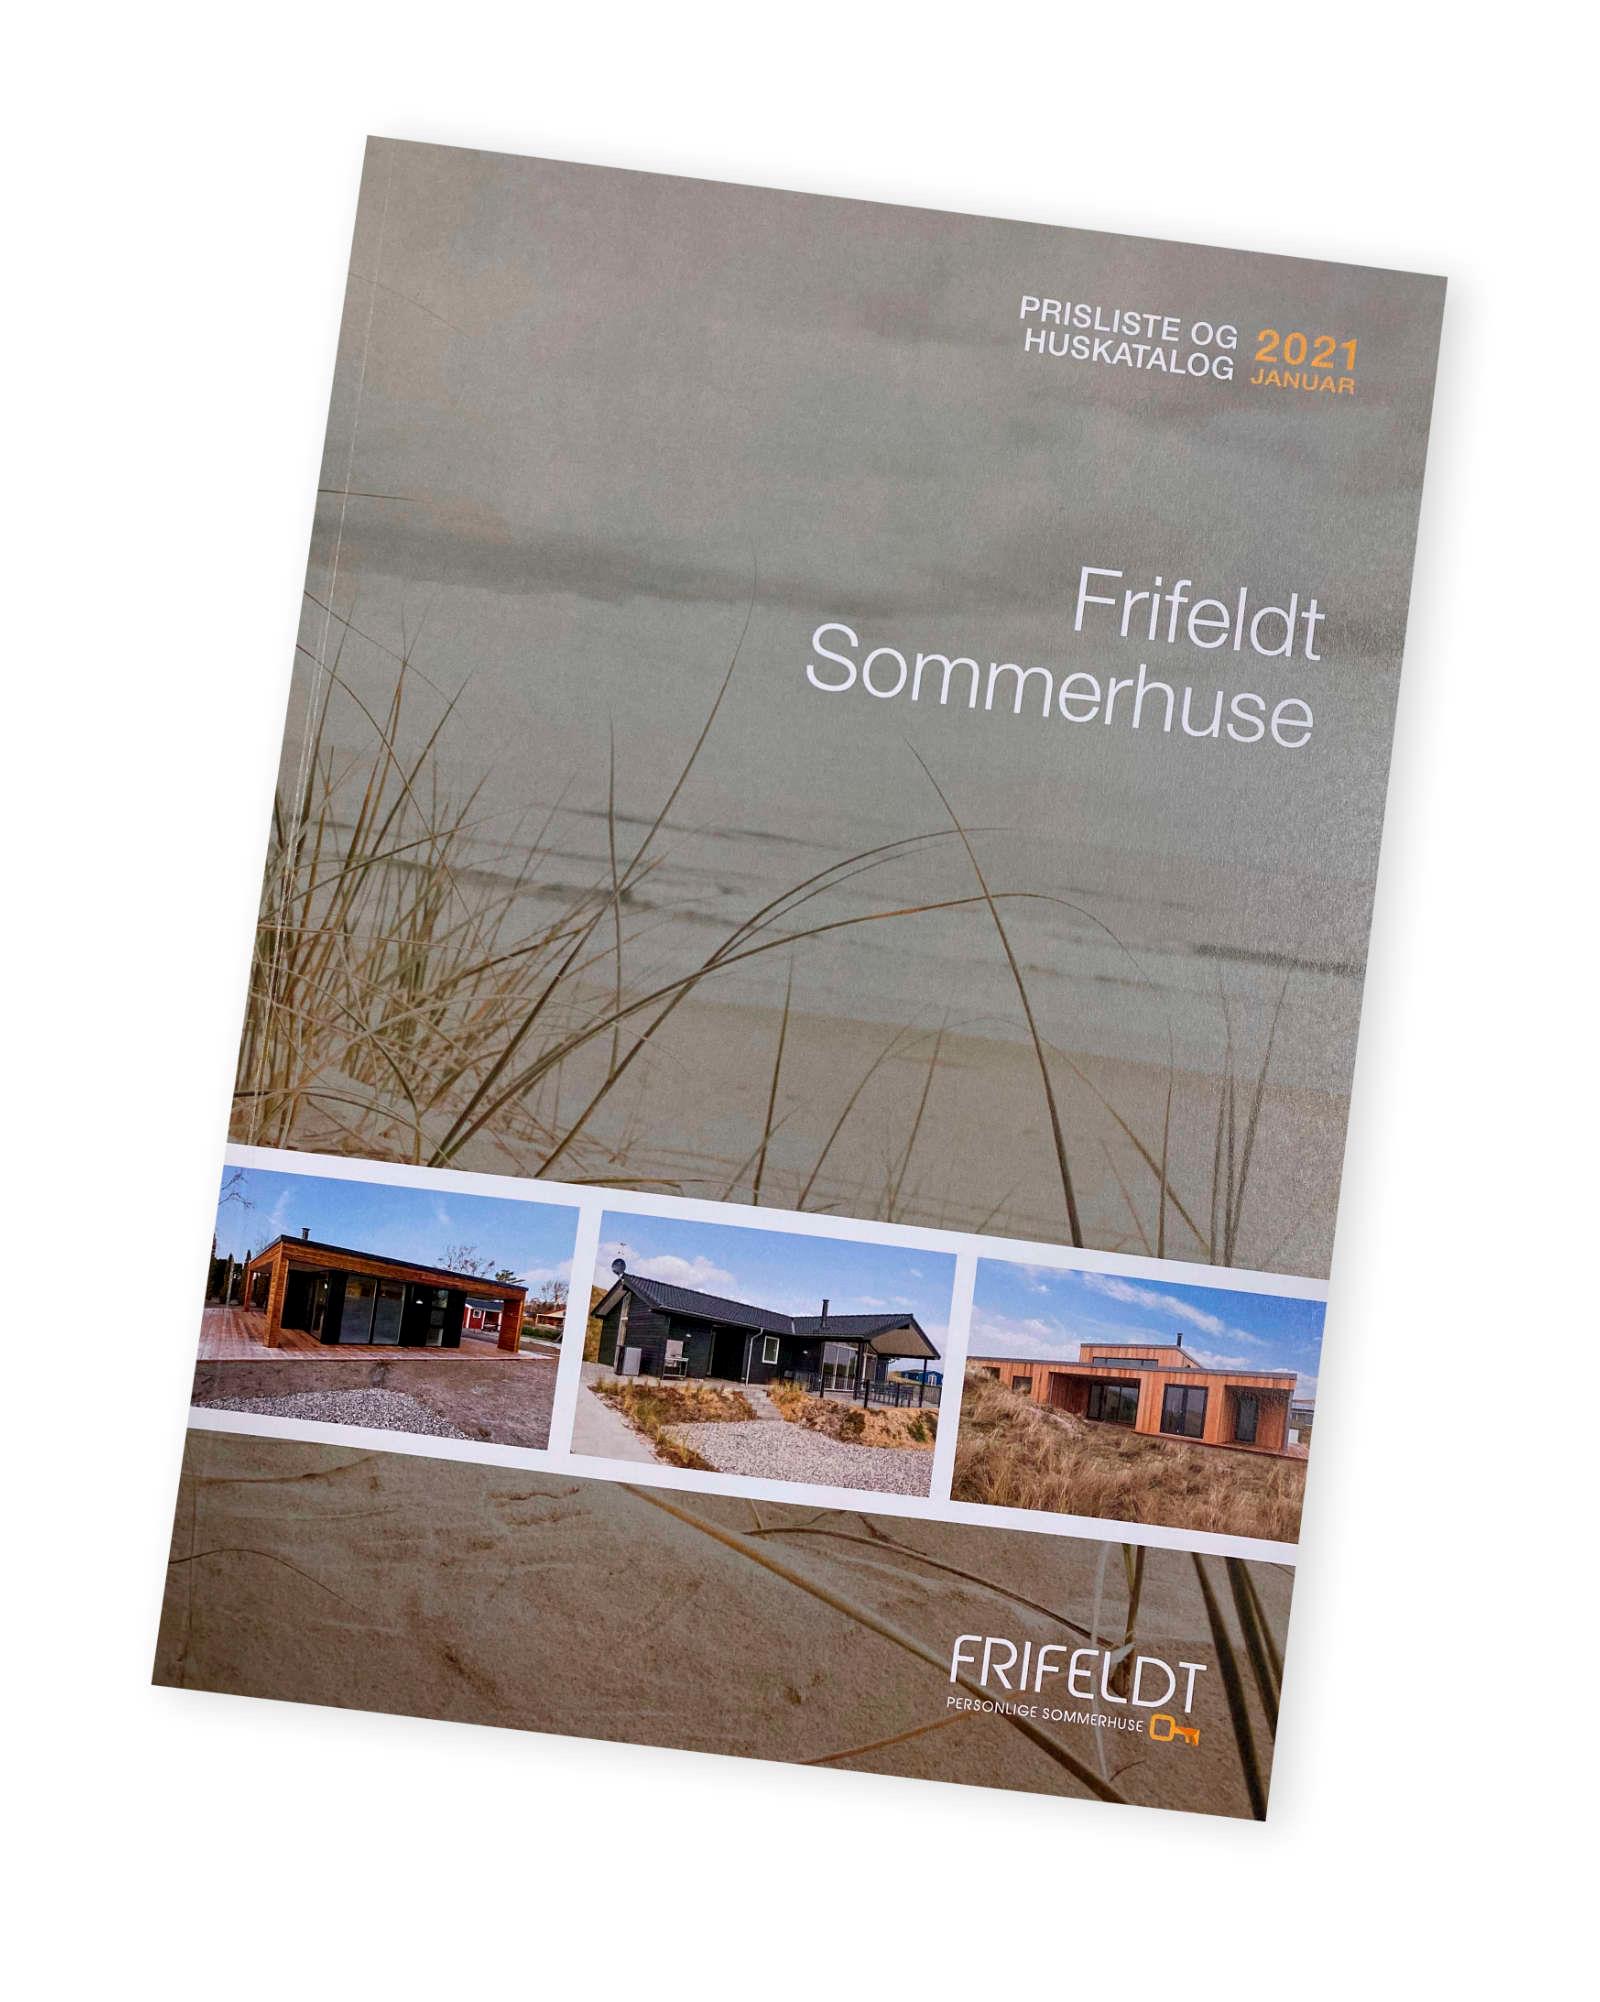 Gratis katalog med sommerhuse fra Frifeldt, et sommerhus byggefirma . Se pris for at bygge nyt fritidshus.